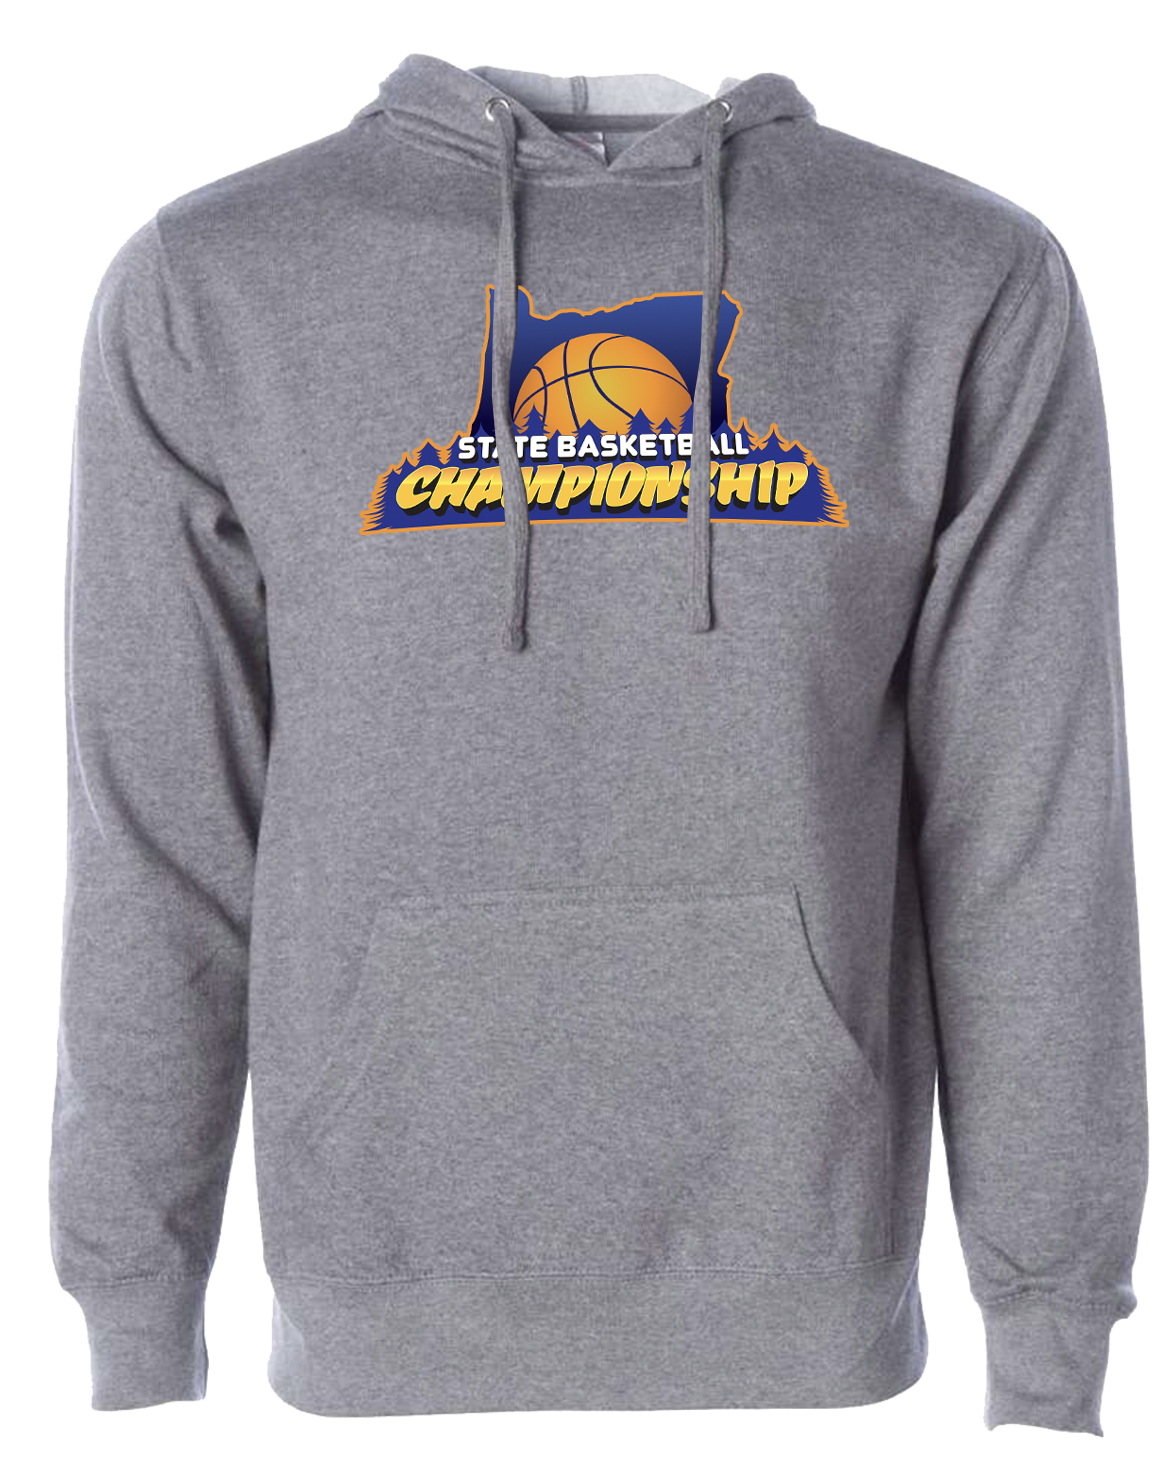 Grey Oregon State Basketball Sweatshirt